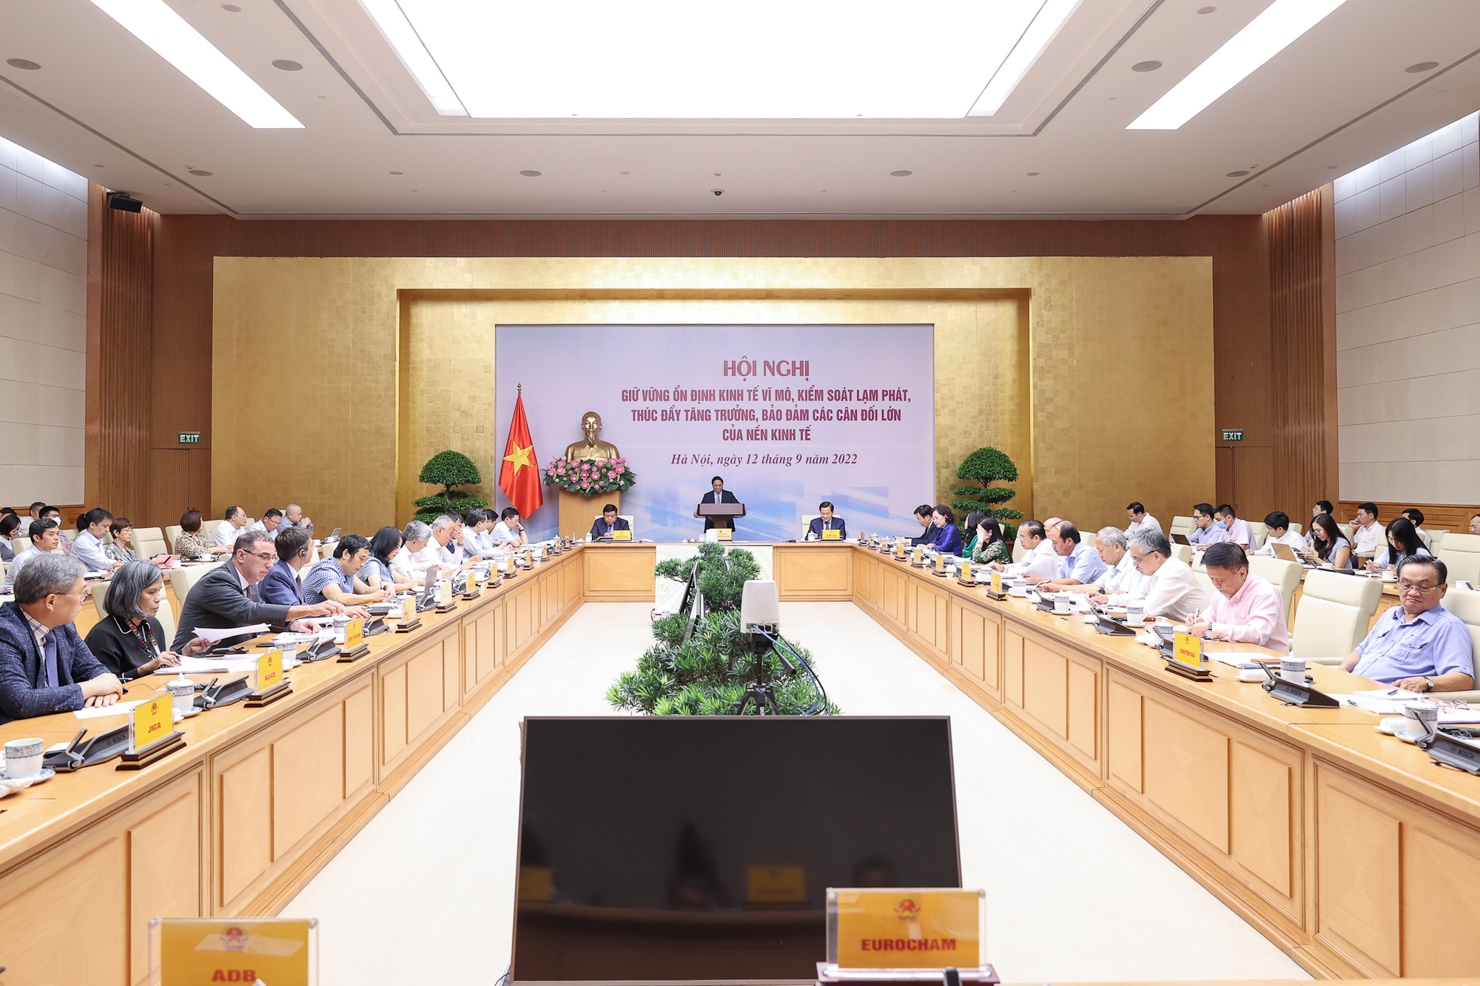 Thủ tướng Phạm Minh Chính chủ trì Hội nghị về giữ vững ổn định kinh tế vĩ mô, kiểm soát lạm phát, thúc đẩy tăng trưởng và bảo đảm các cân đối lớn của nền kinh tế - Ảnh: VGP/Nhật Bắc